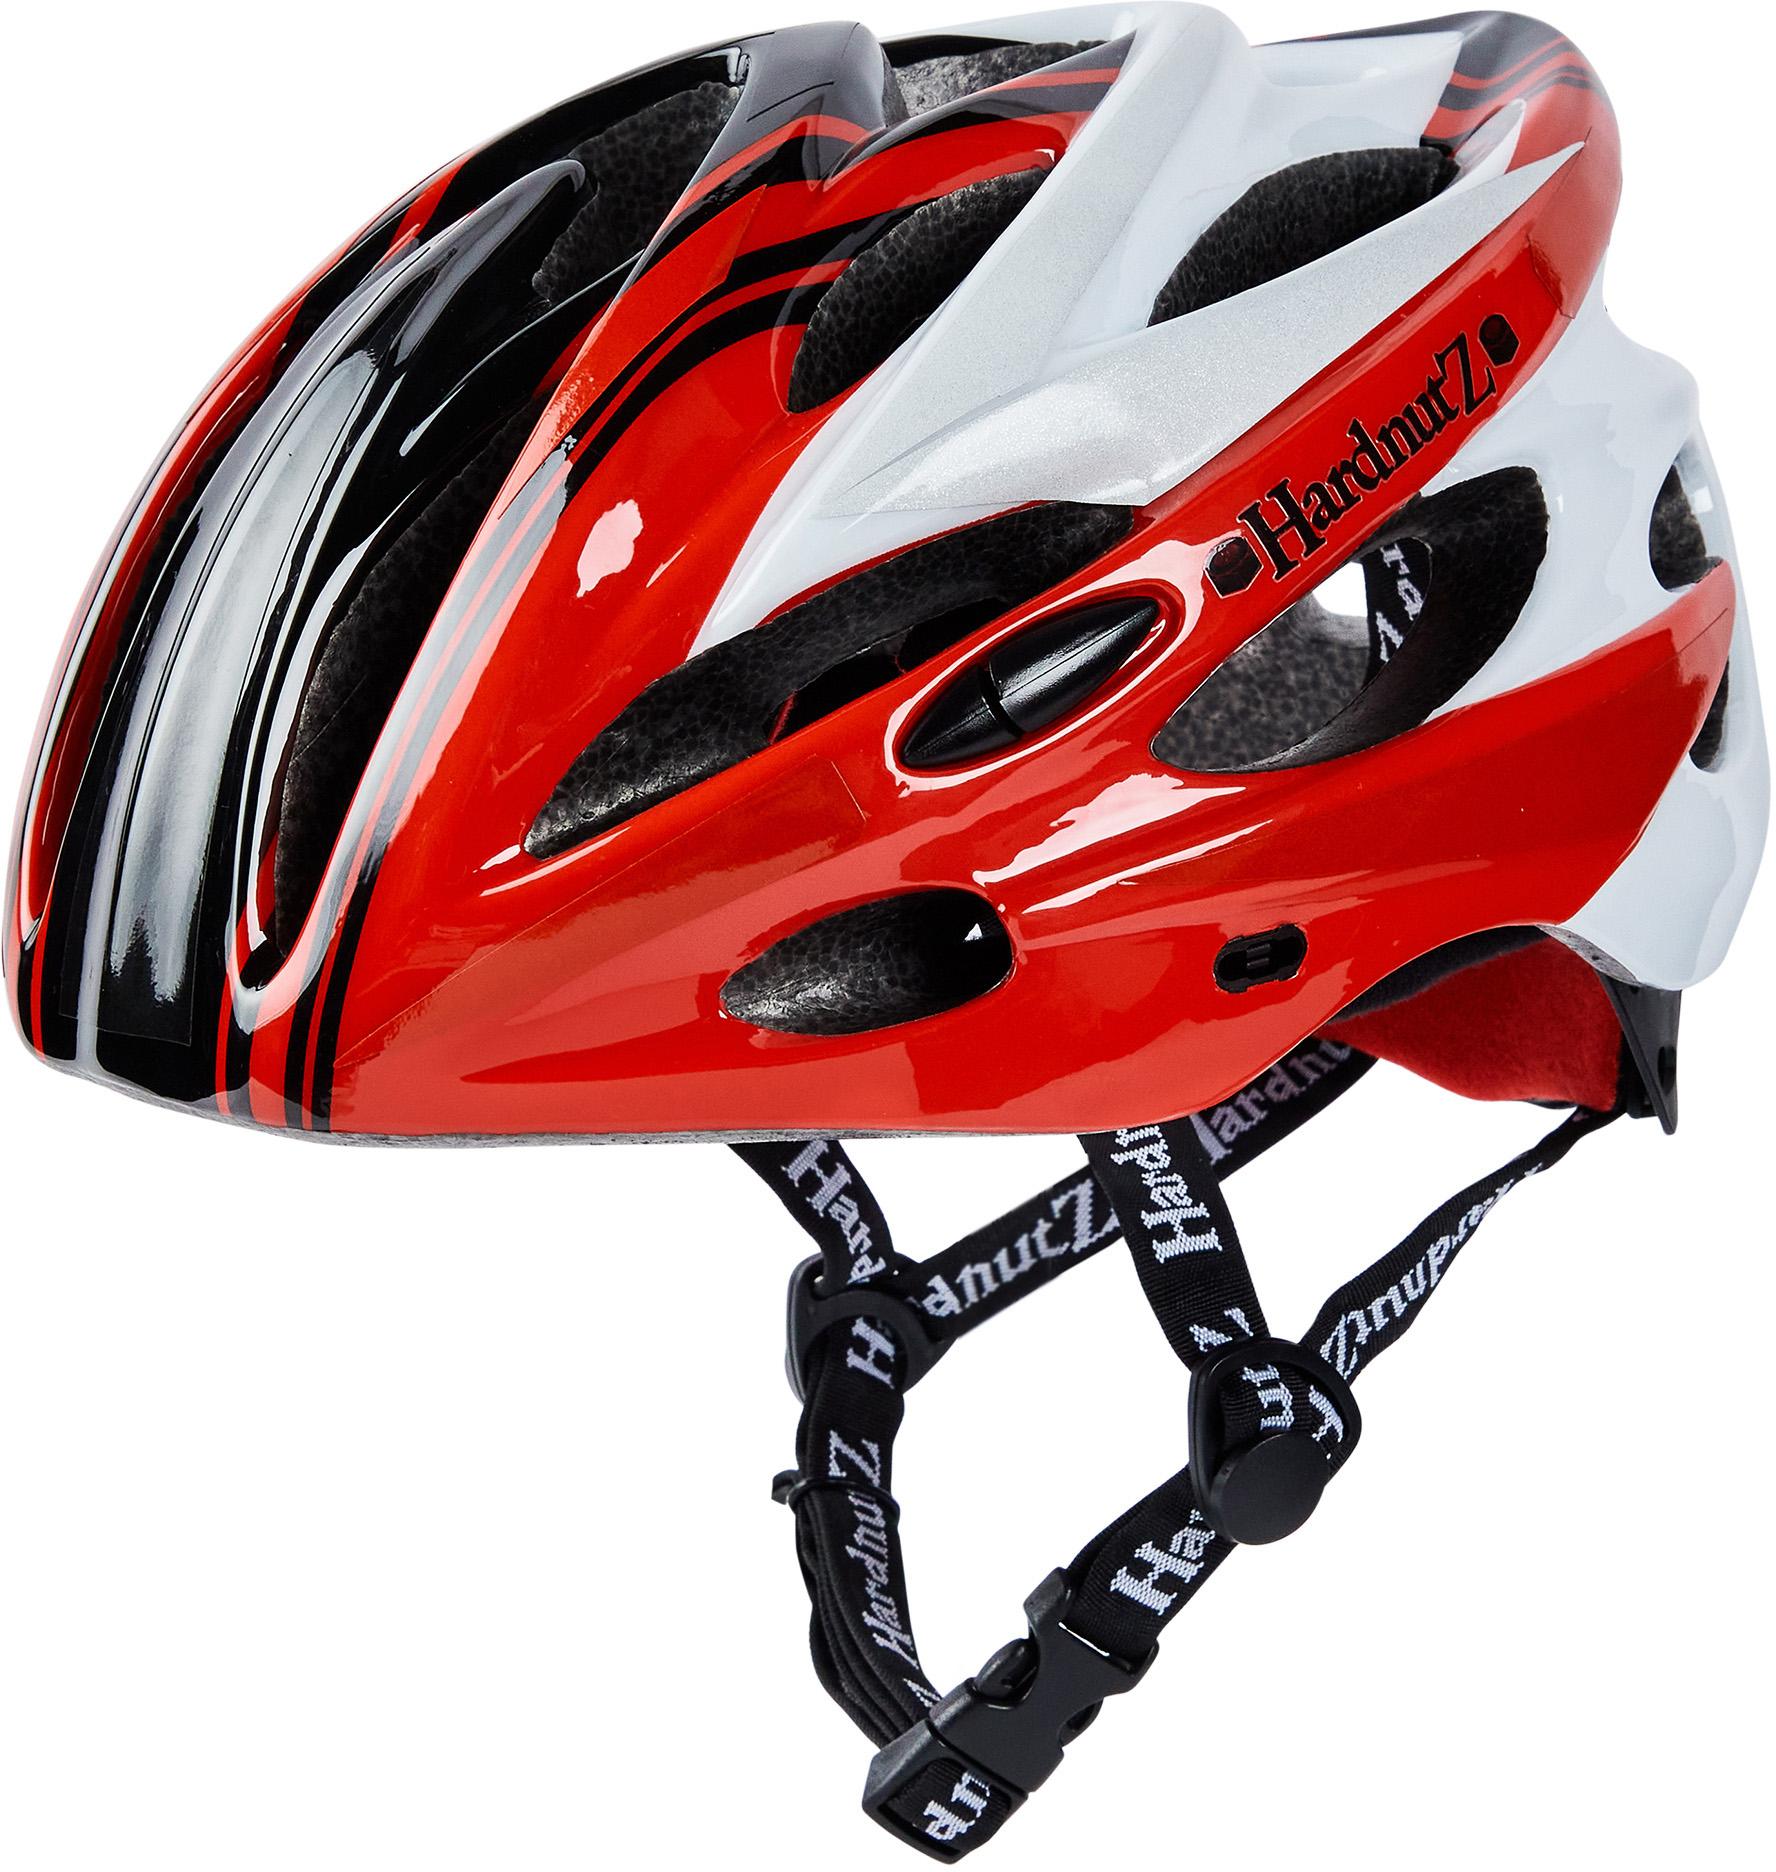 Hardnutz Stealth Hi-Vis Cycle Helmet, Red/Black/White